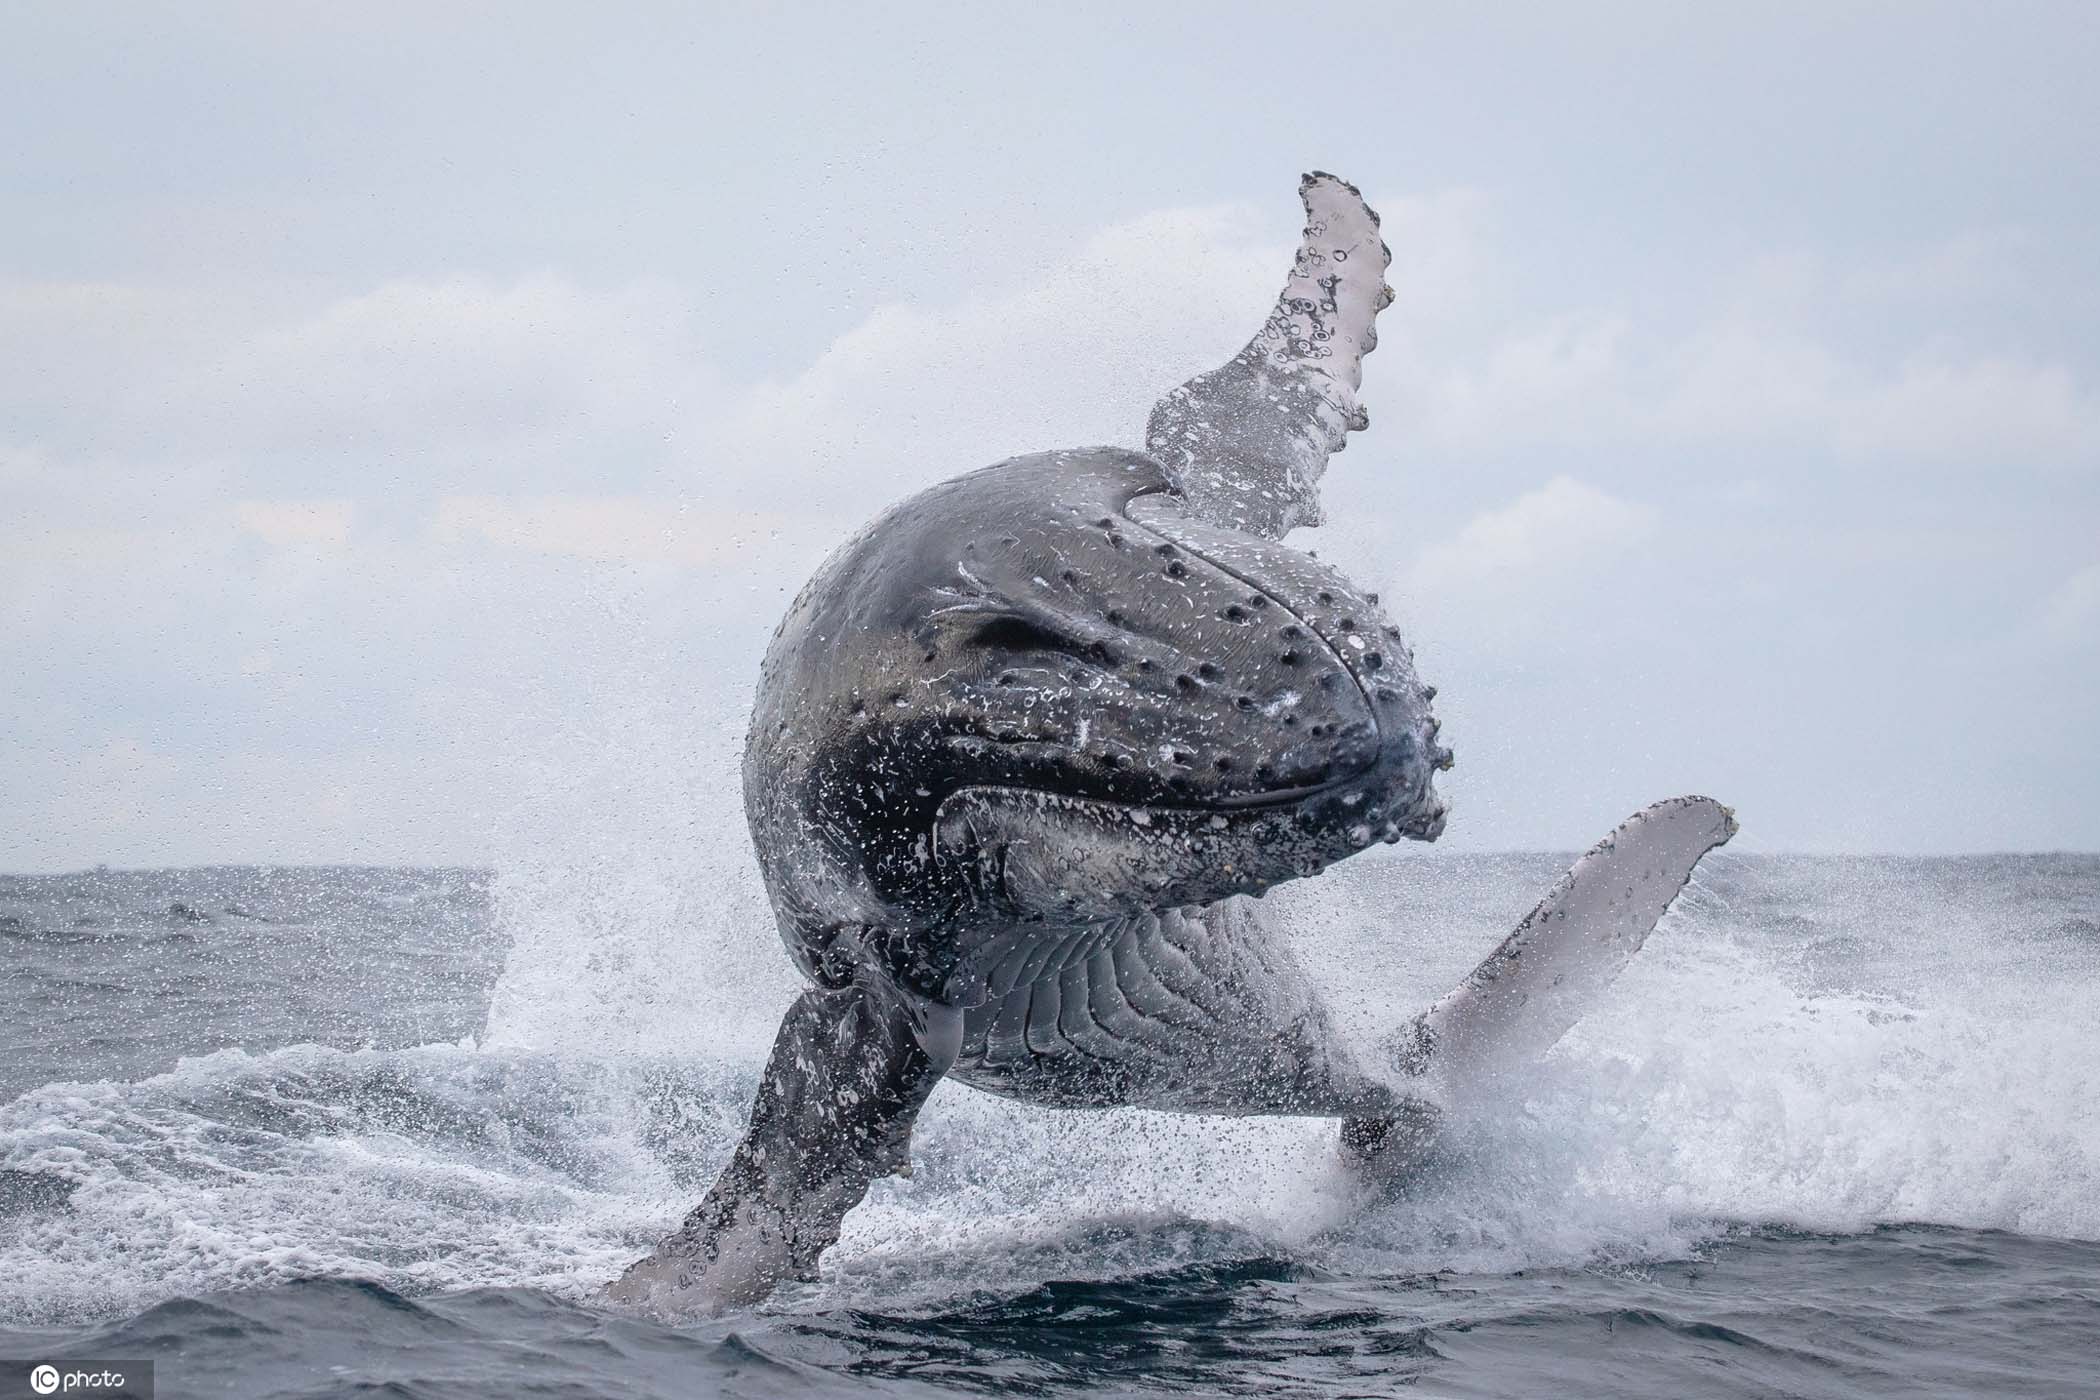 【动物世界】久别重逢对人类超友好鲸鱼腾空跃出水面"